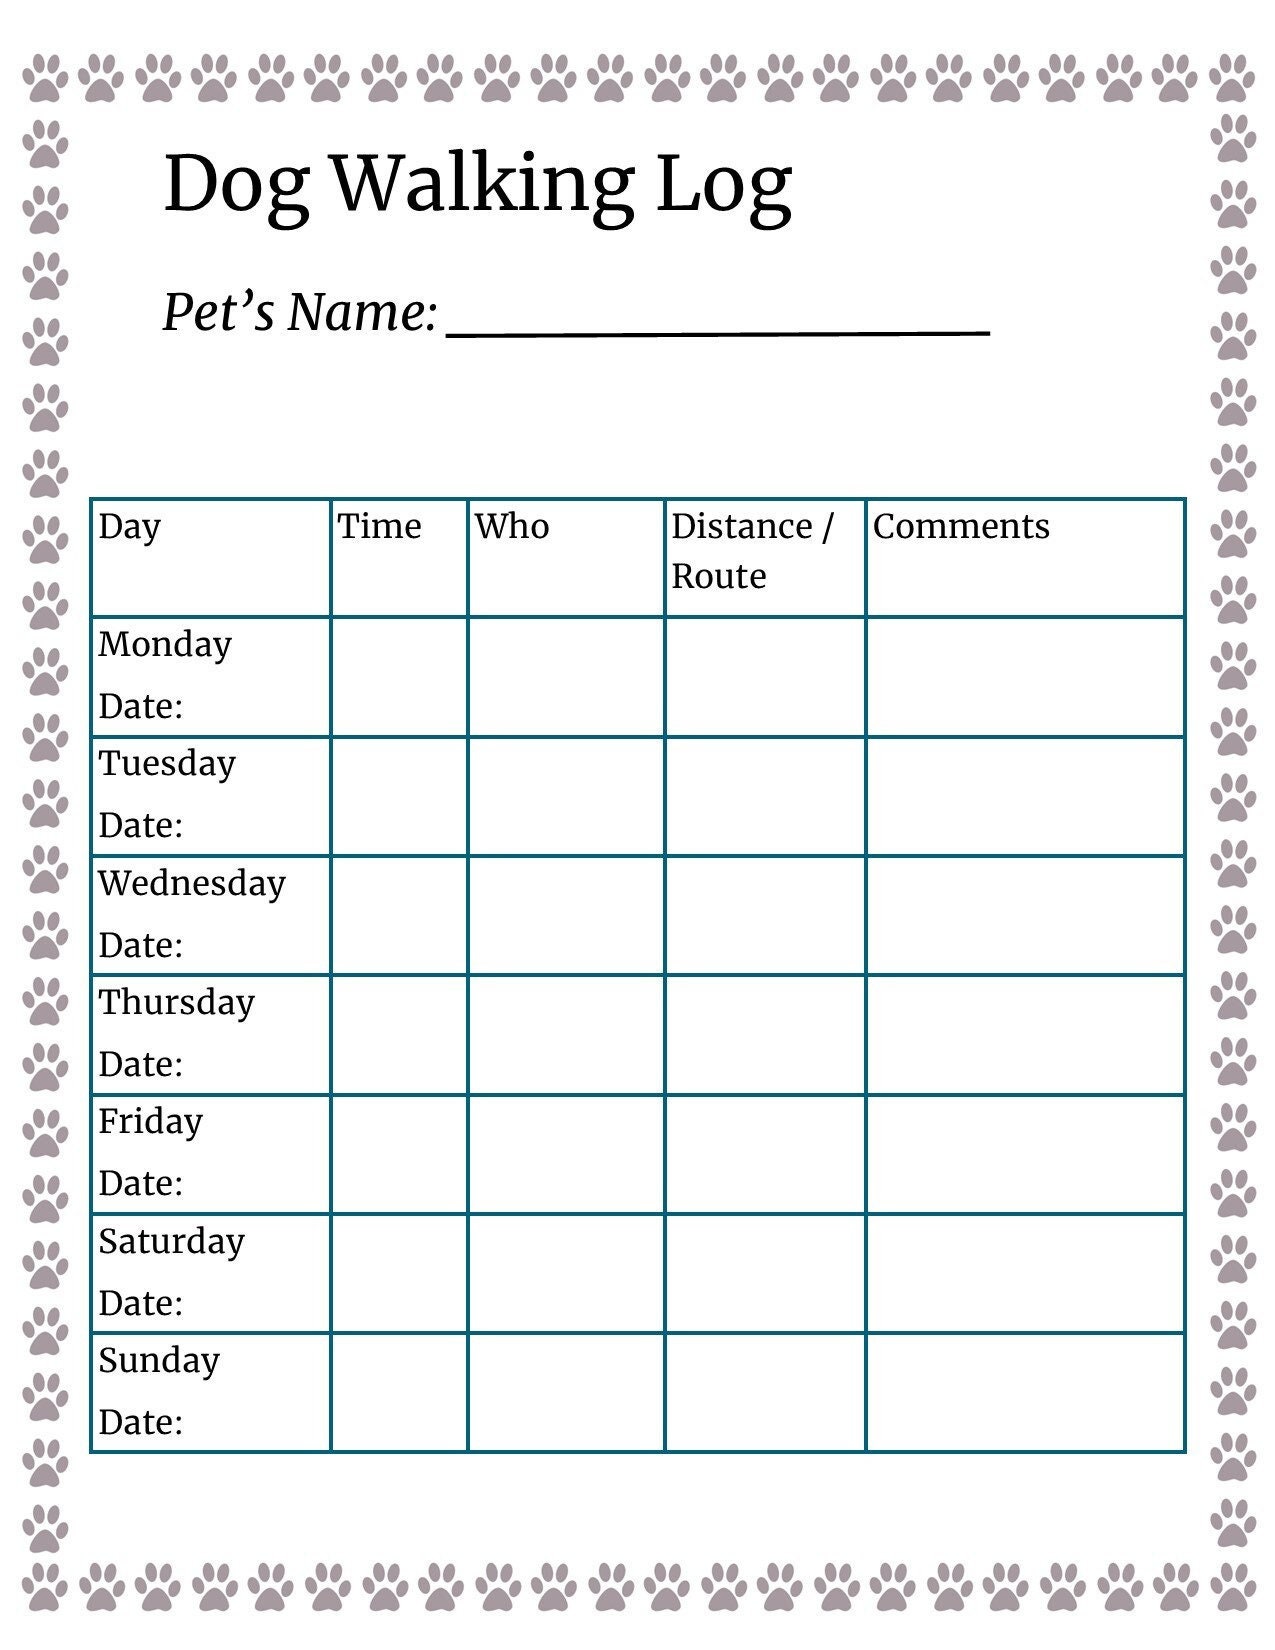 printable-dog-walking-log-dog-walking-tracker-pet-log-dog-etsy